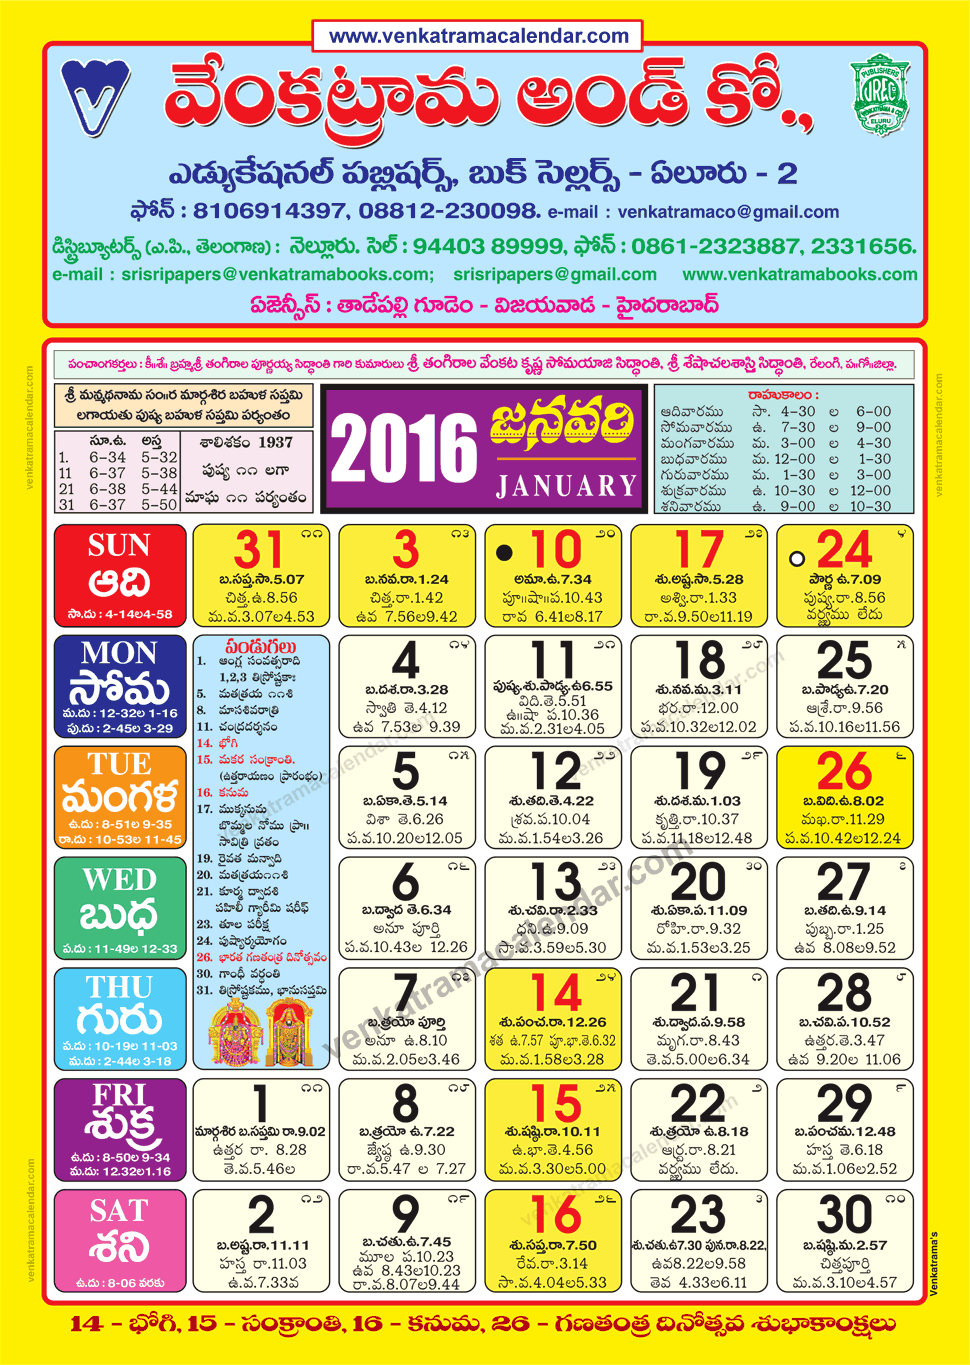 indian-telugu-calendar-customize-and-print